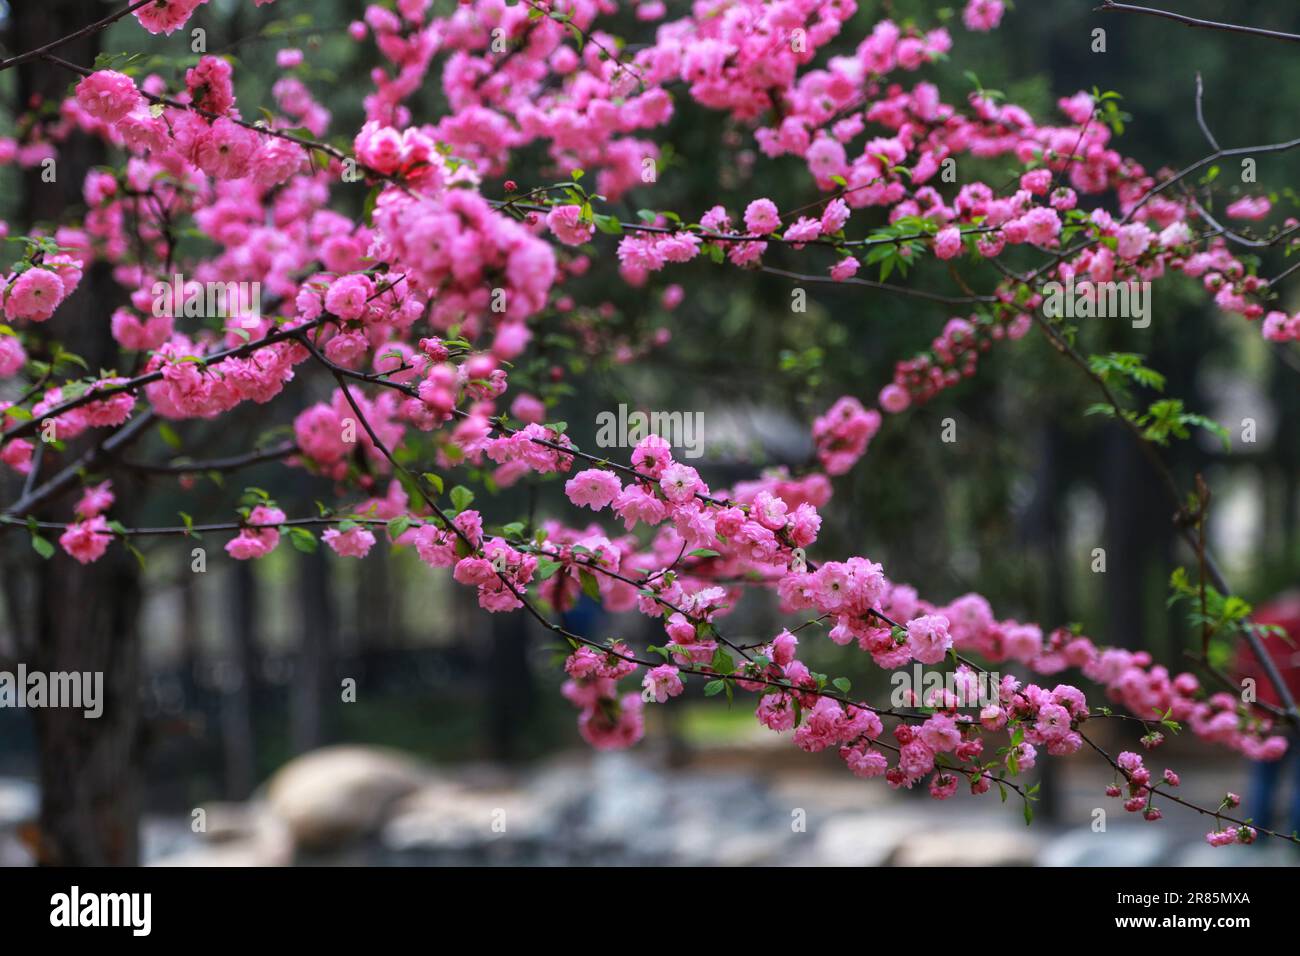 Deliziatevi con l'ipnosa vista dei fiori rosa in piena fioritura sotto un albero illuminato dal sole. Un'immagine serena e incantevole che cattura la bellezza della natura Foto Stock